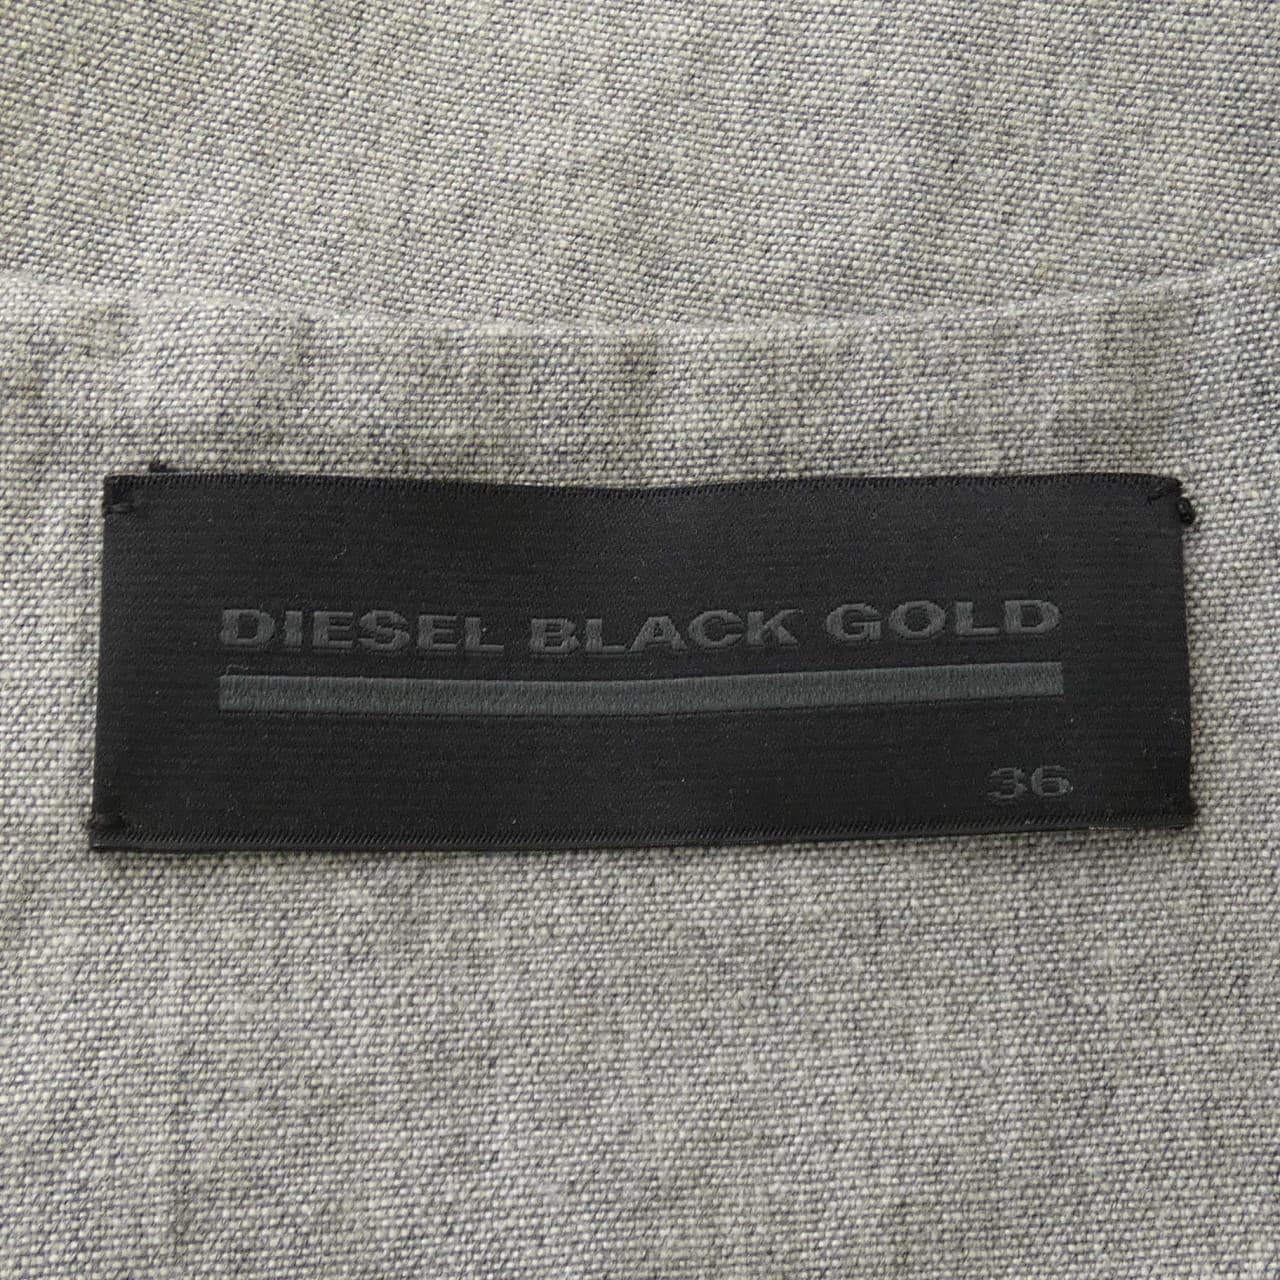 柴油黑金DIESEL BLACK GOLD束腰衫